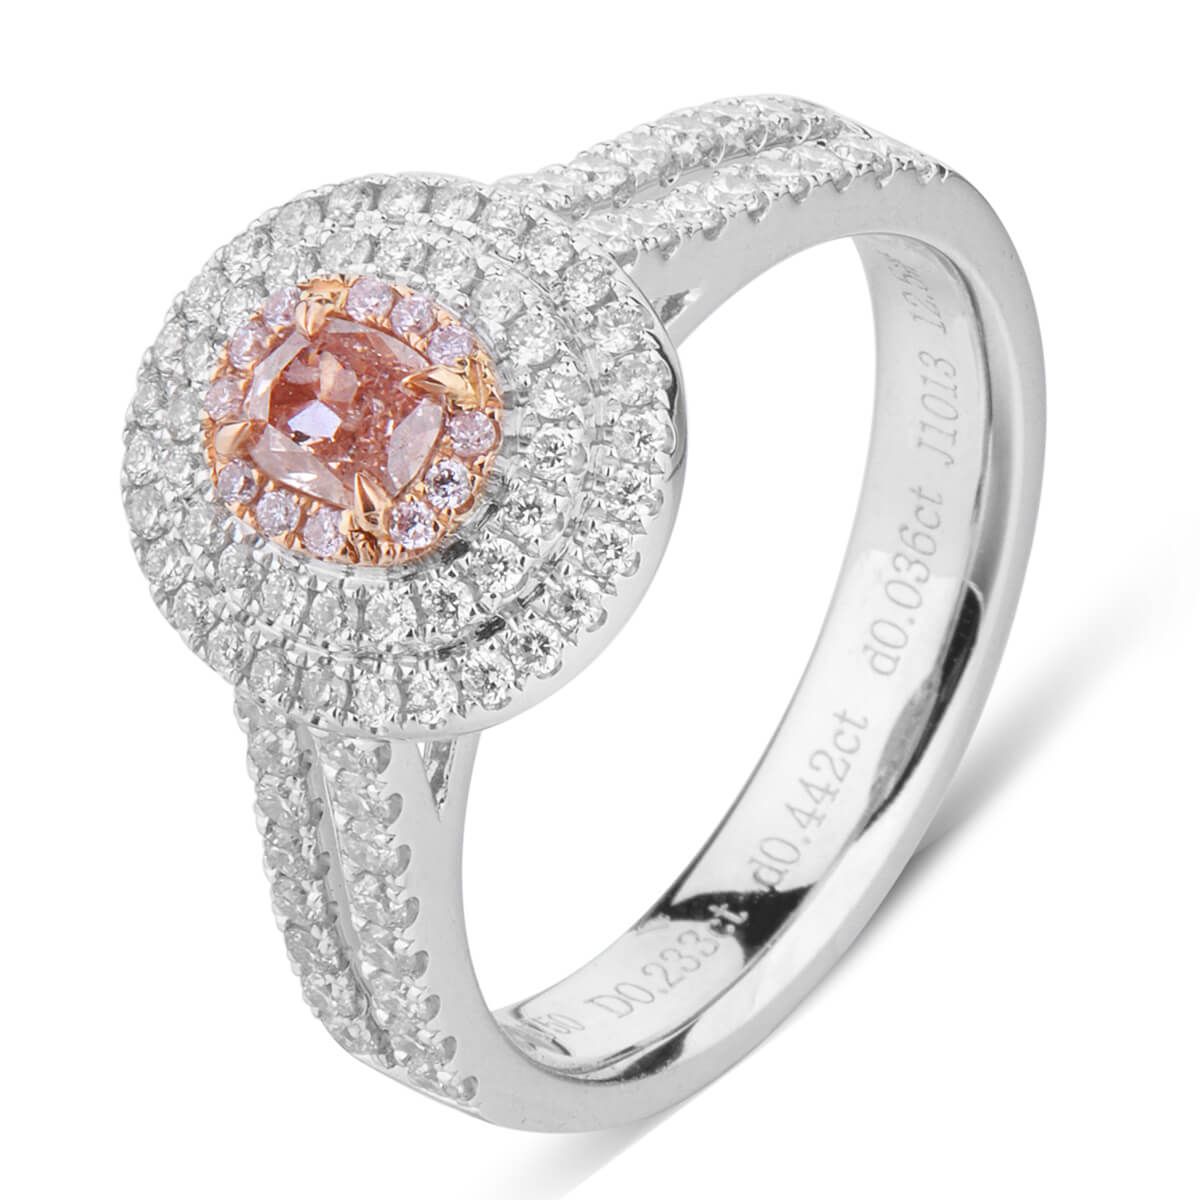 Fancy Pink Purple Diamond Ring, 0.23 Ct. (0.71 Ct. TW), Oval shape